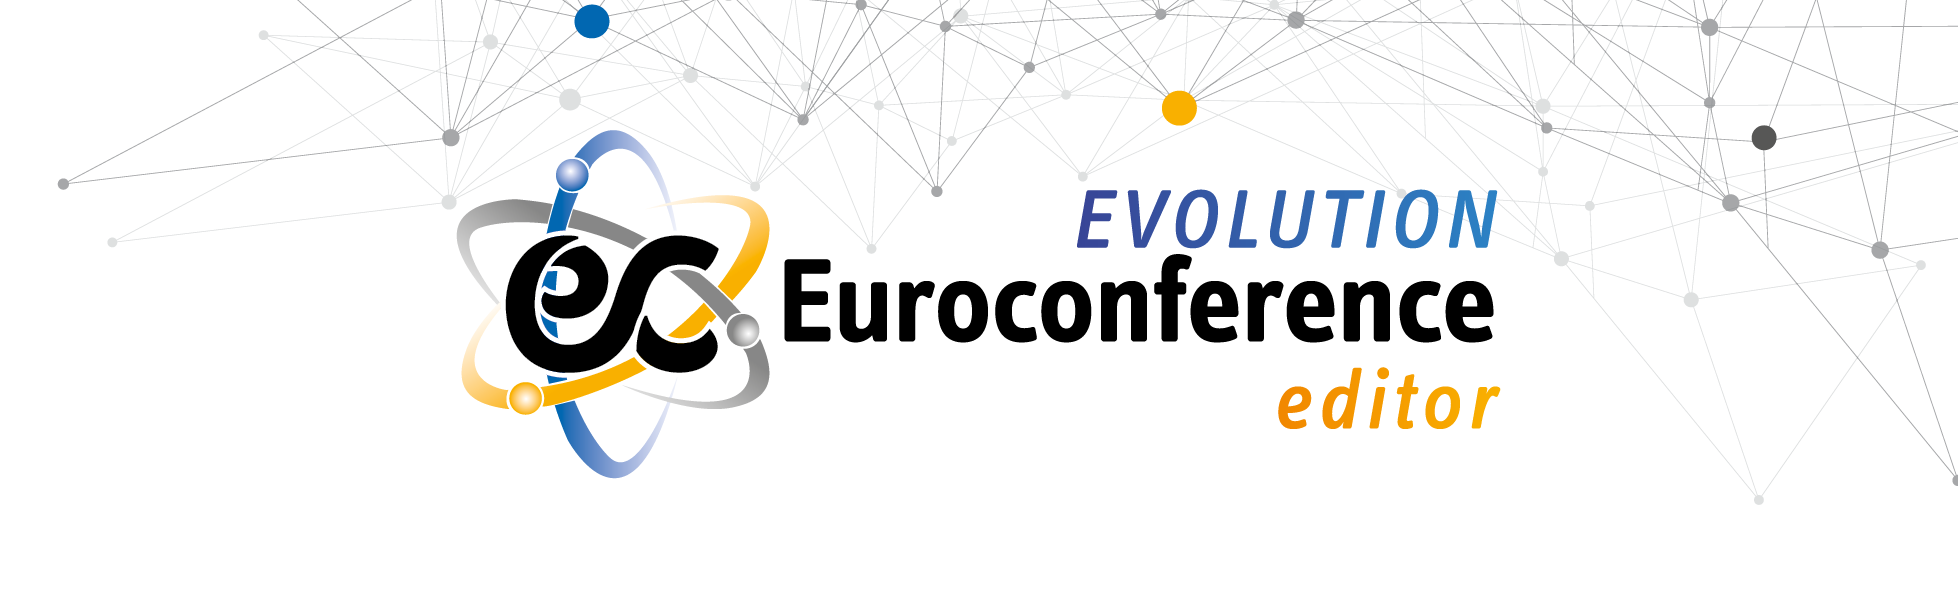 Immagine Euroconference Evolution Editor